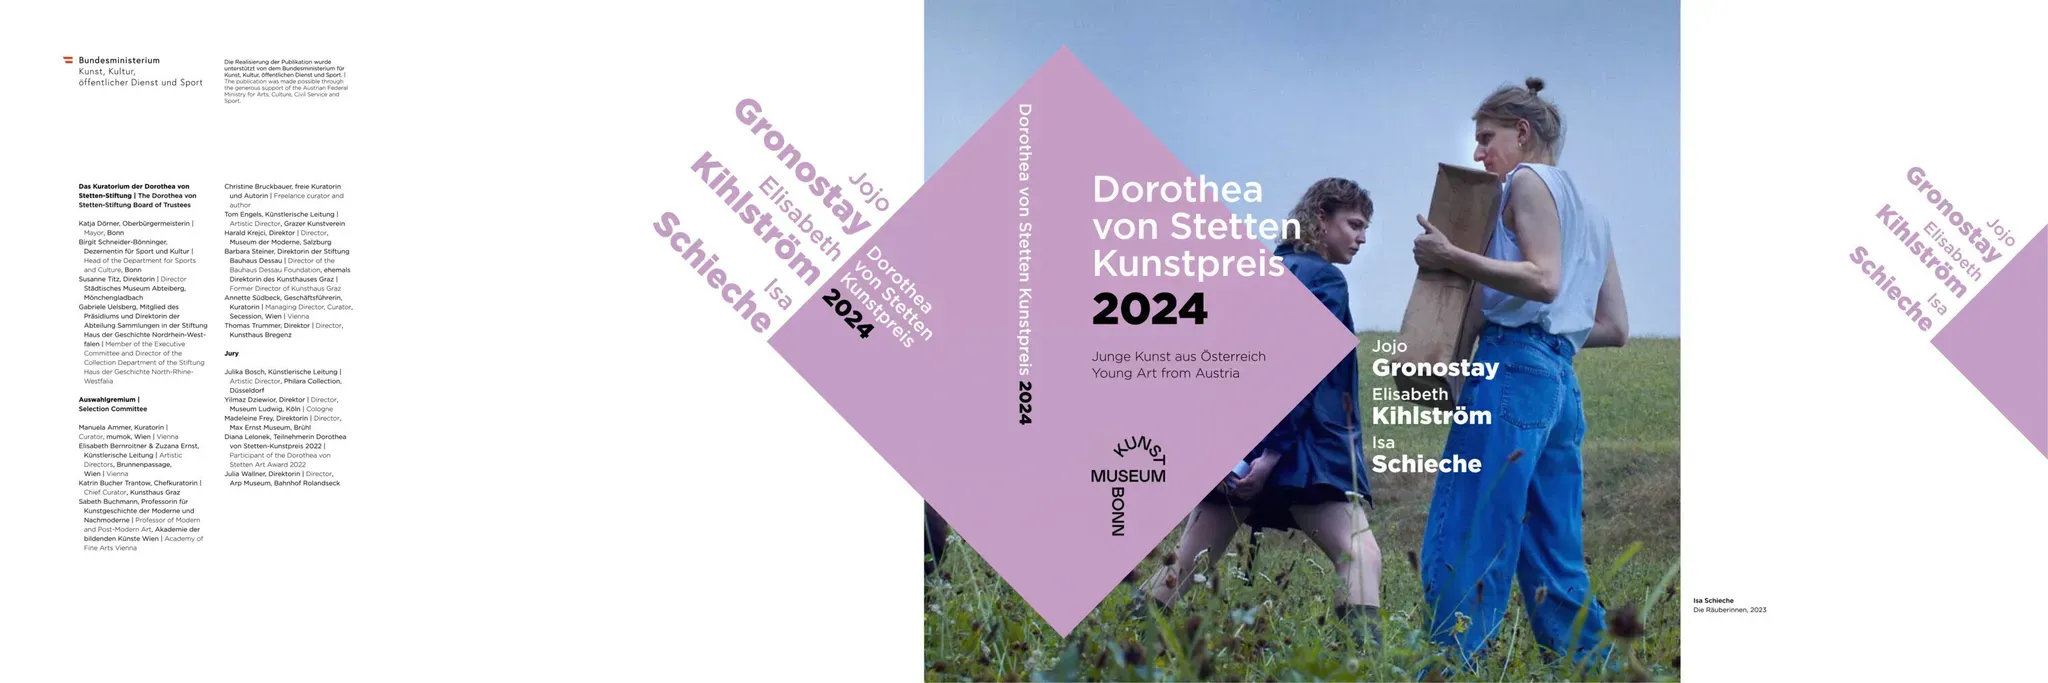 Dorothea Von Stetten Kunstpreis 2024 - Sabeth Buchmann  Lica Alica Klosterkötter  Gudrun Ratzinger  Kartoniert (TB)